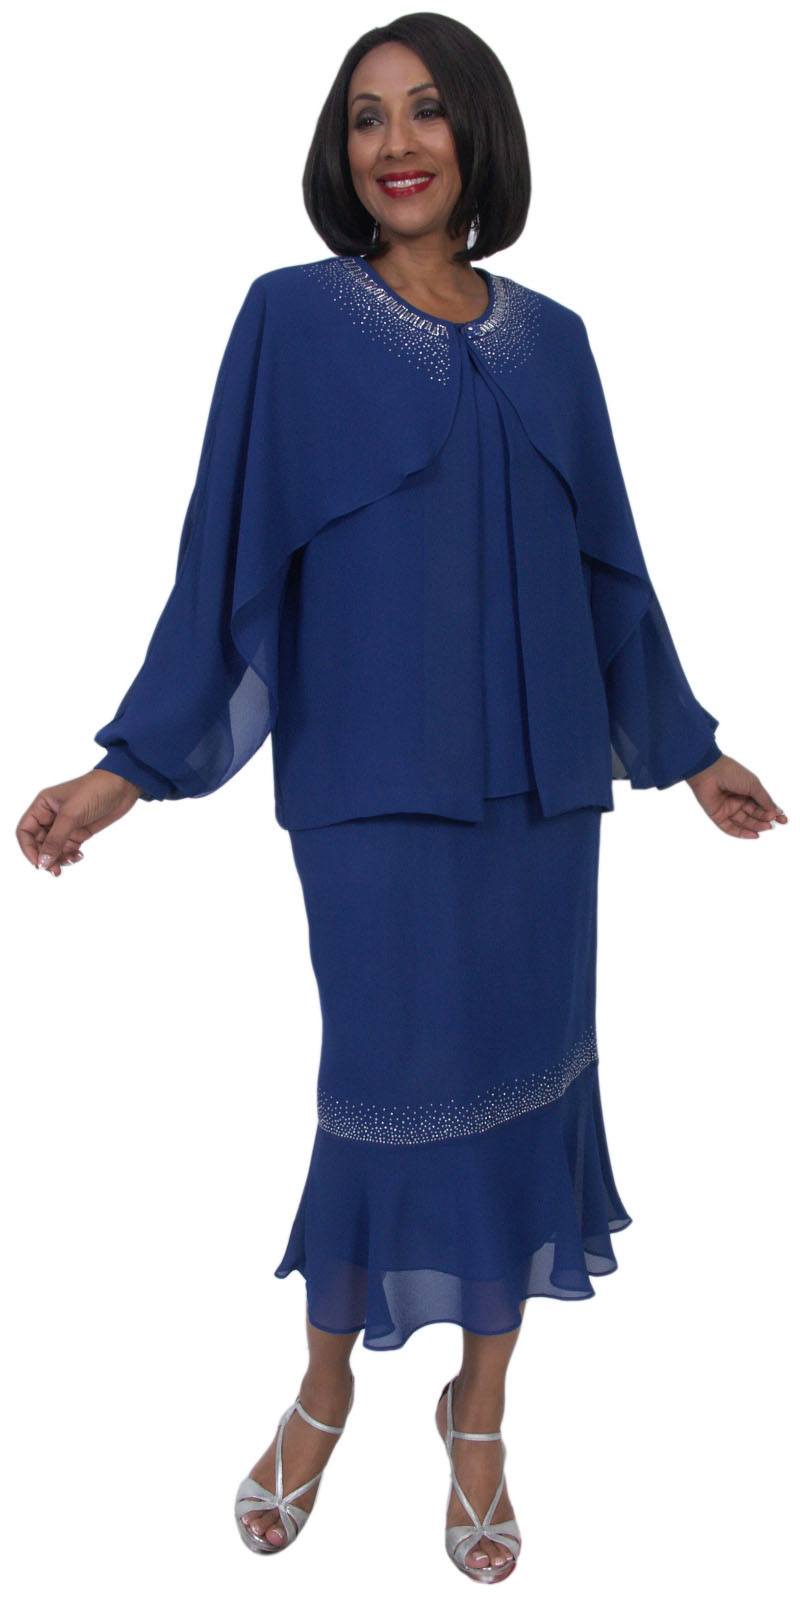 Hosanna 5235 Plus Size 3 Piece Set Royal Blue Ankle Length Dress